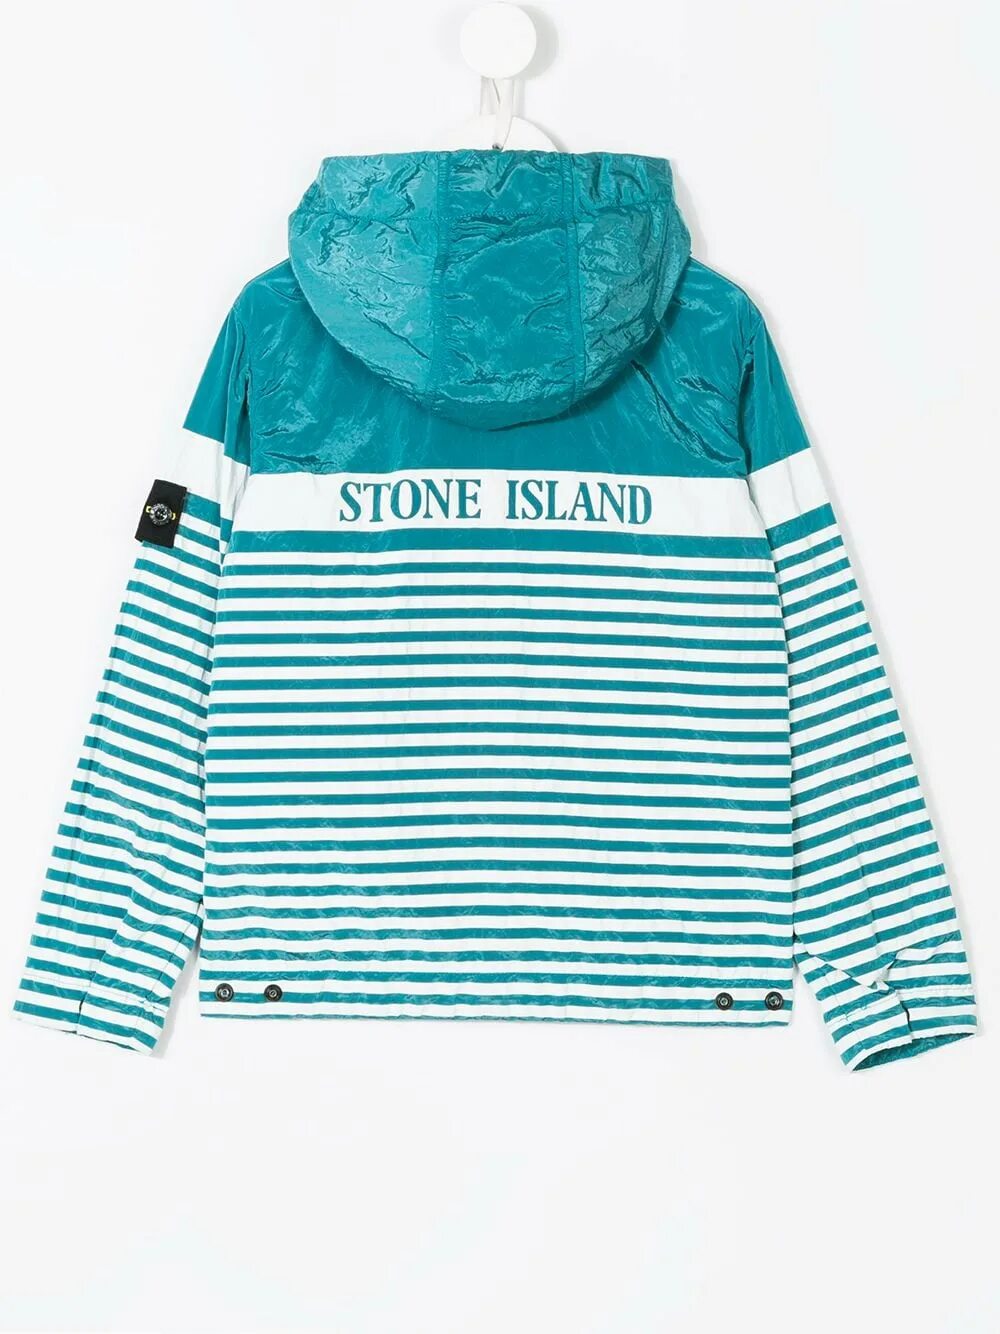 Island junior. Stone Island Junior мятный свитшот. Stone Island Junior куртка с капюшоном. Stone Island Junior CLG. Stone Island Junior свитшот.